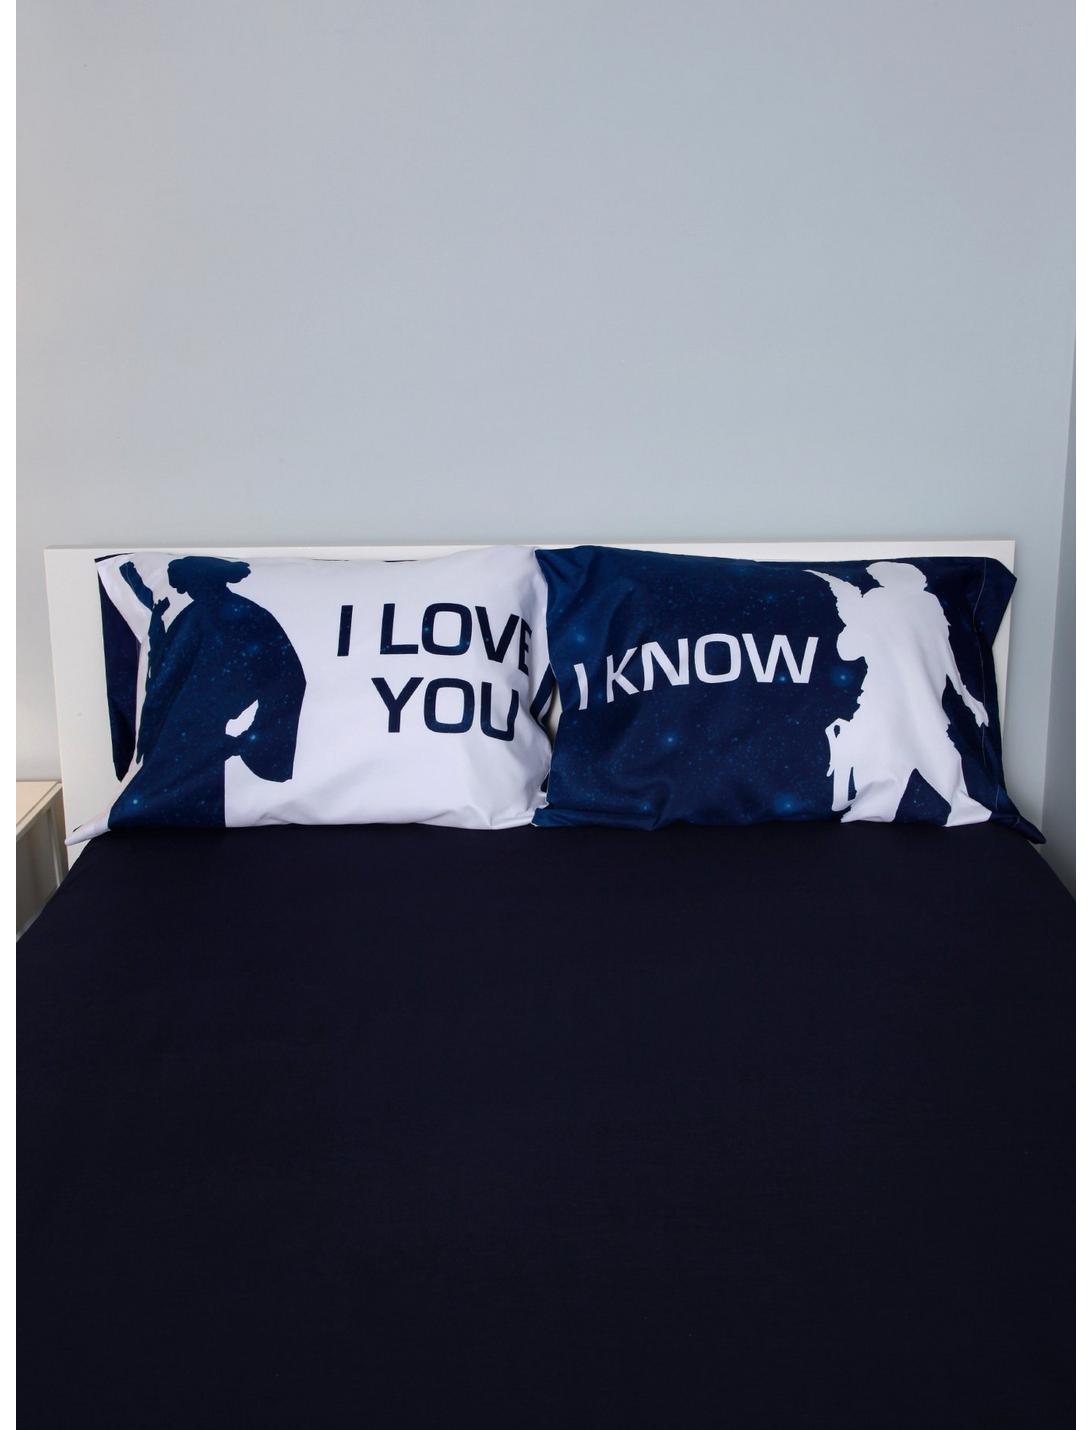 BEIN Yongblud Pillowcase for Men Women Teens Home Car Cushion Cover